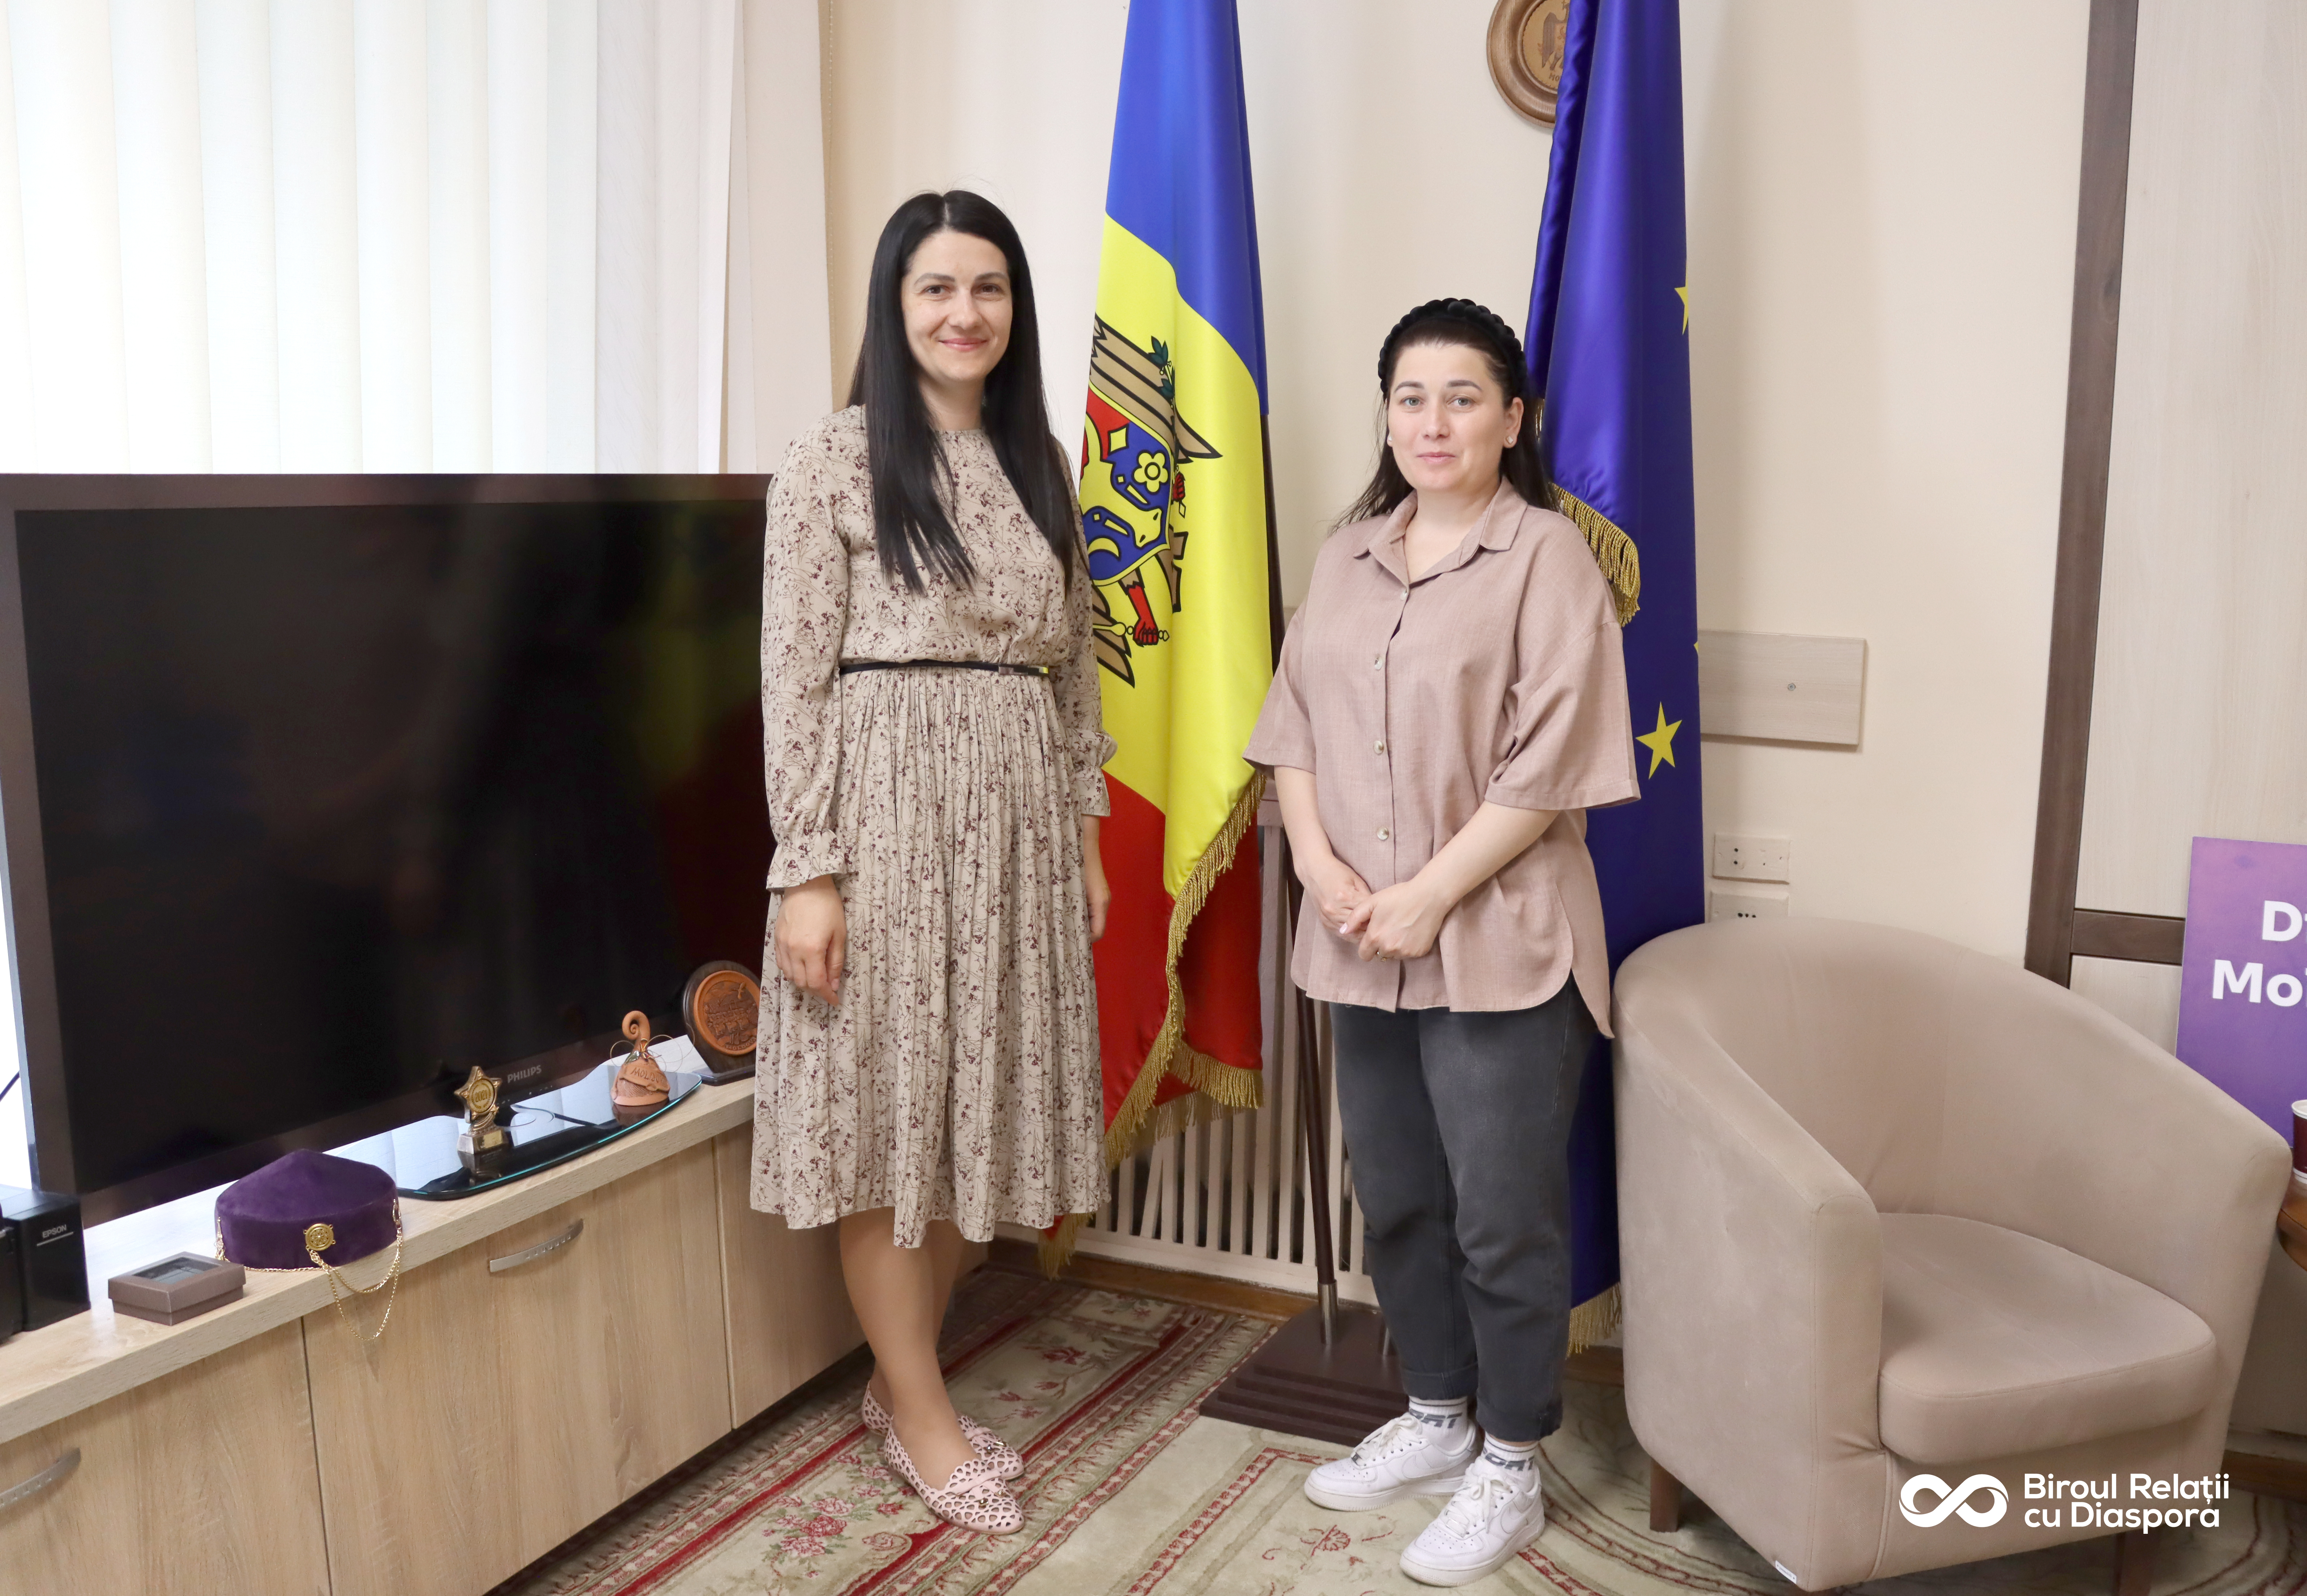 Impactul desfășurării Proiectului DEH „Teatrul copilăriei”, discutat de către echipa BRD cu actrița Victoria Roșca